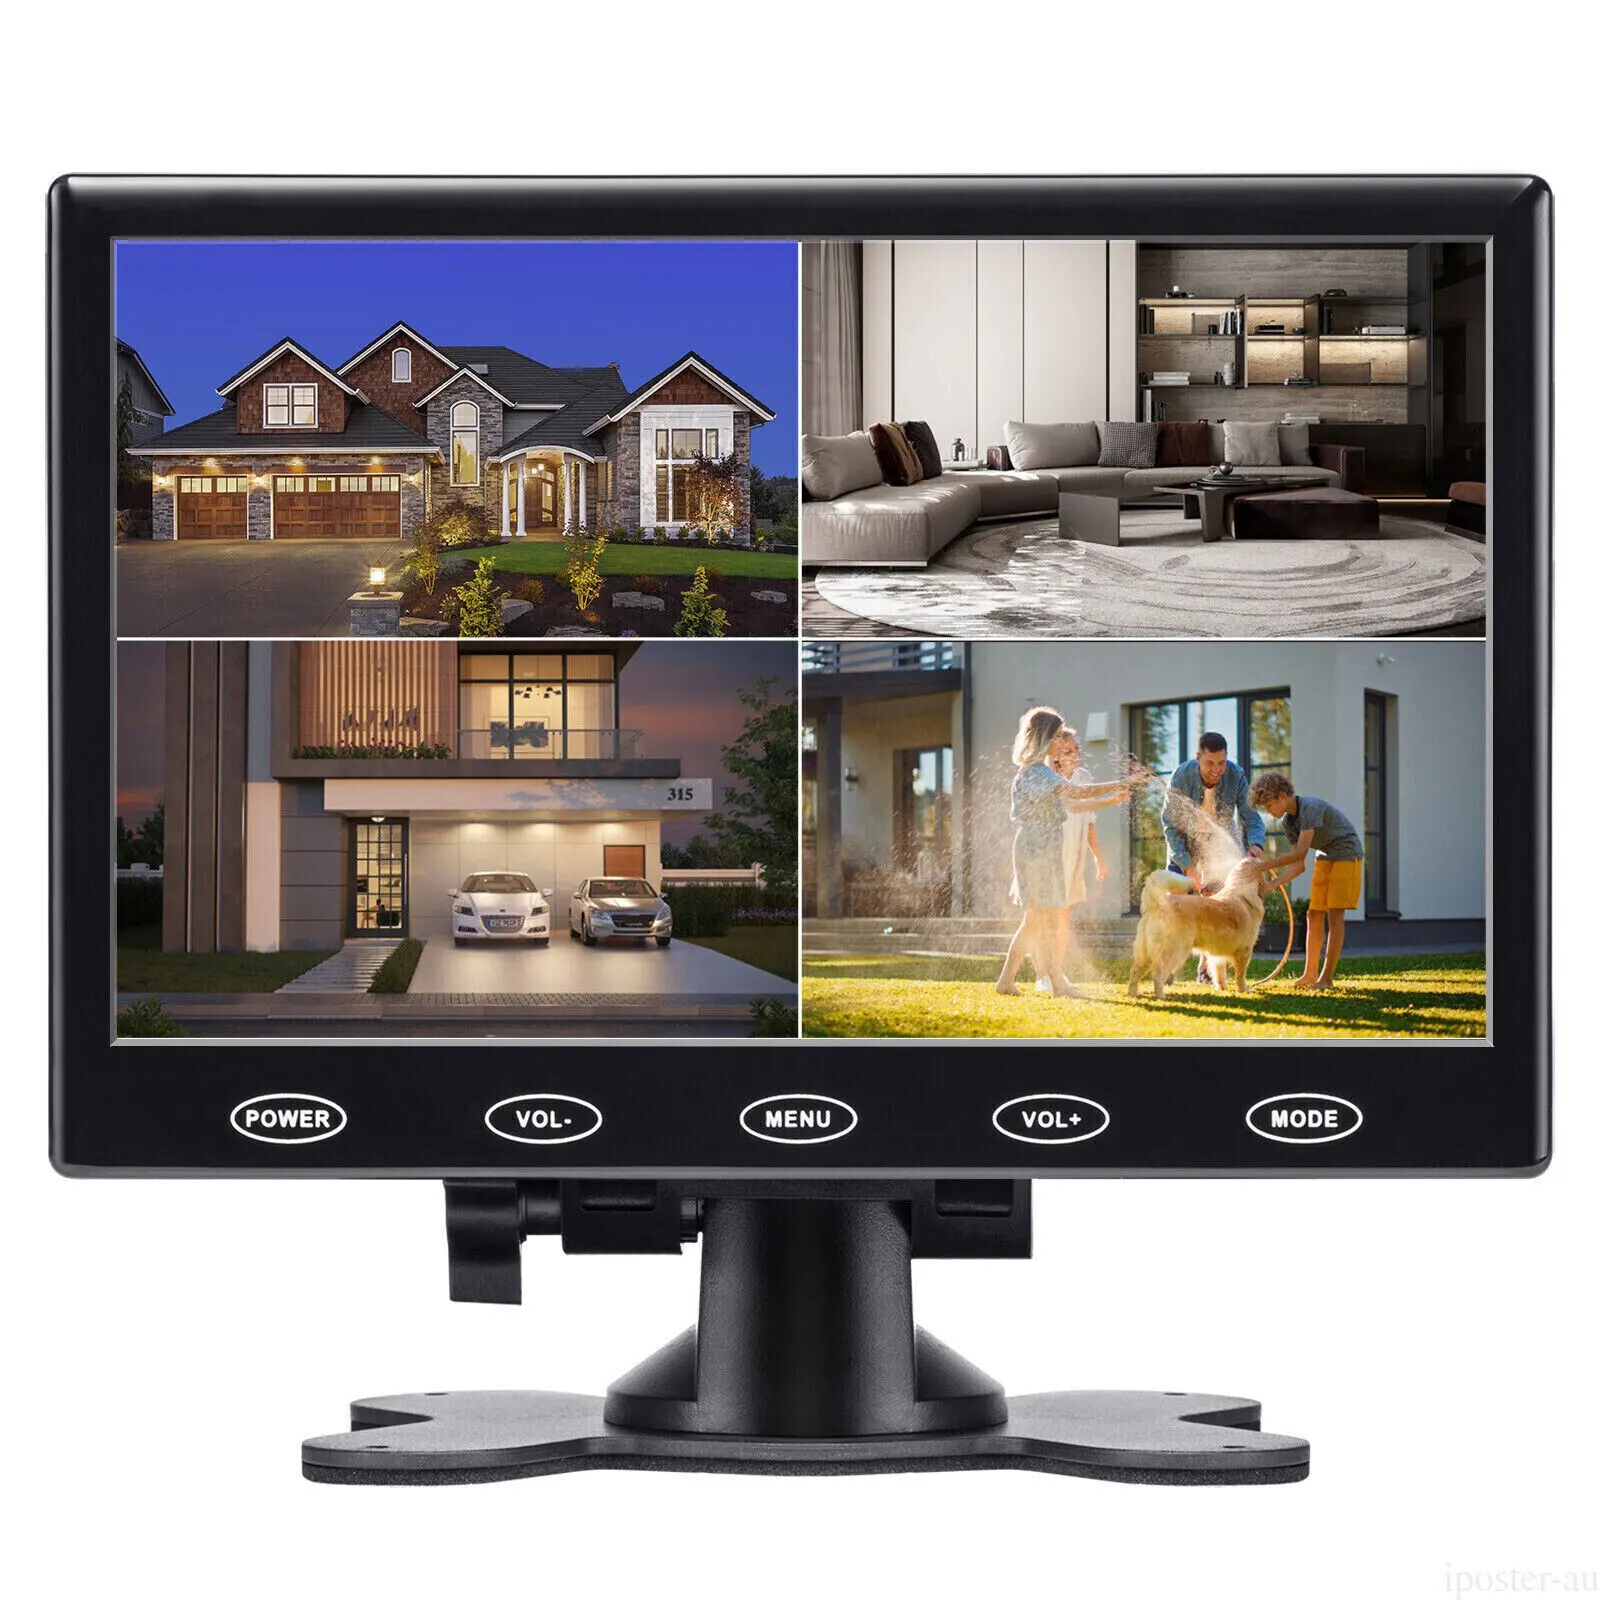 IPoster 7 pouces LCD HD CCTV moniteur PC IPS écran HDM AV/RCA VGA entrée avec haut-parleur CCTV moniteur de surveillance